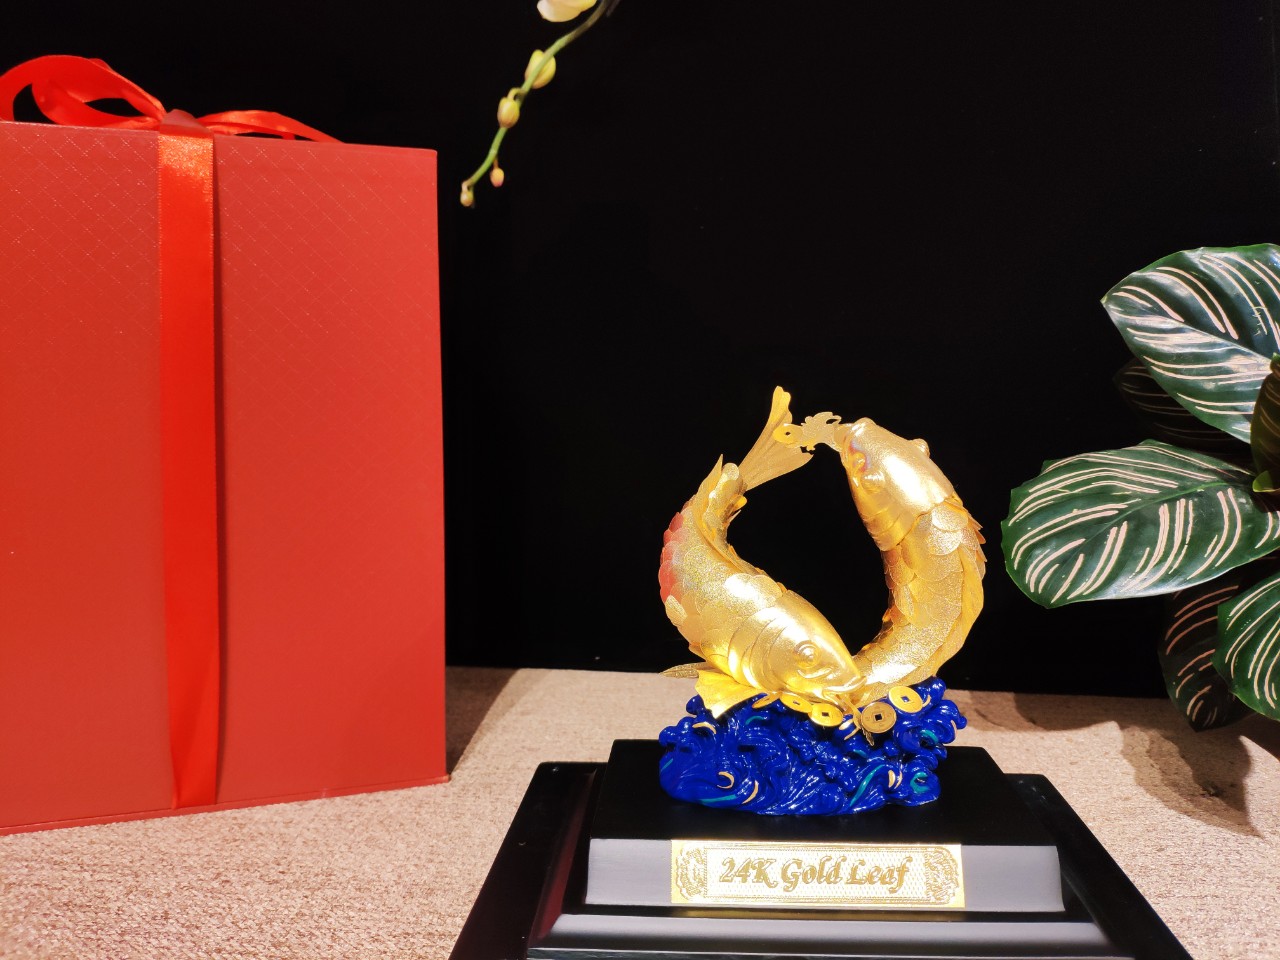 Tượng Đôi Cá Chép Dát Vàng 24K( 24x18x13 cm) MT Gold Art- Hàng chính hãng, trang trí nhà cửa, phòng làm việc, quà tặng sếp, đối tác, khách hàng, tân gia, khai trương